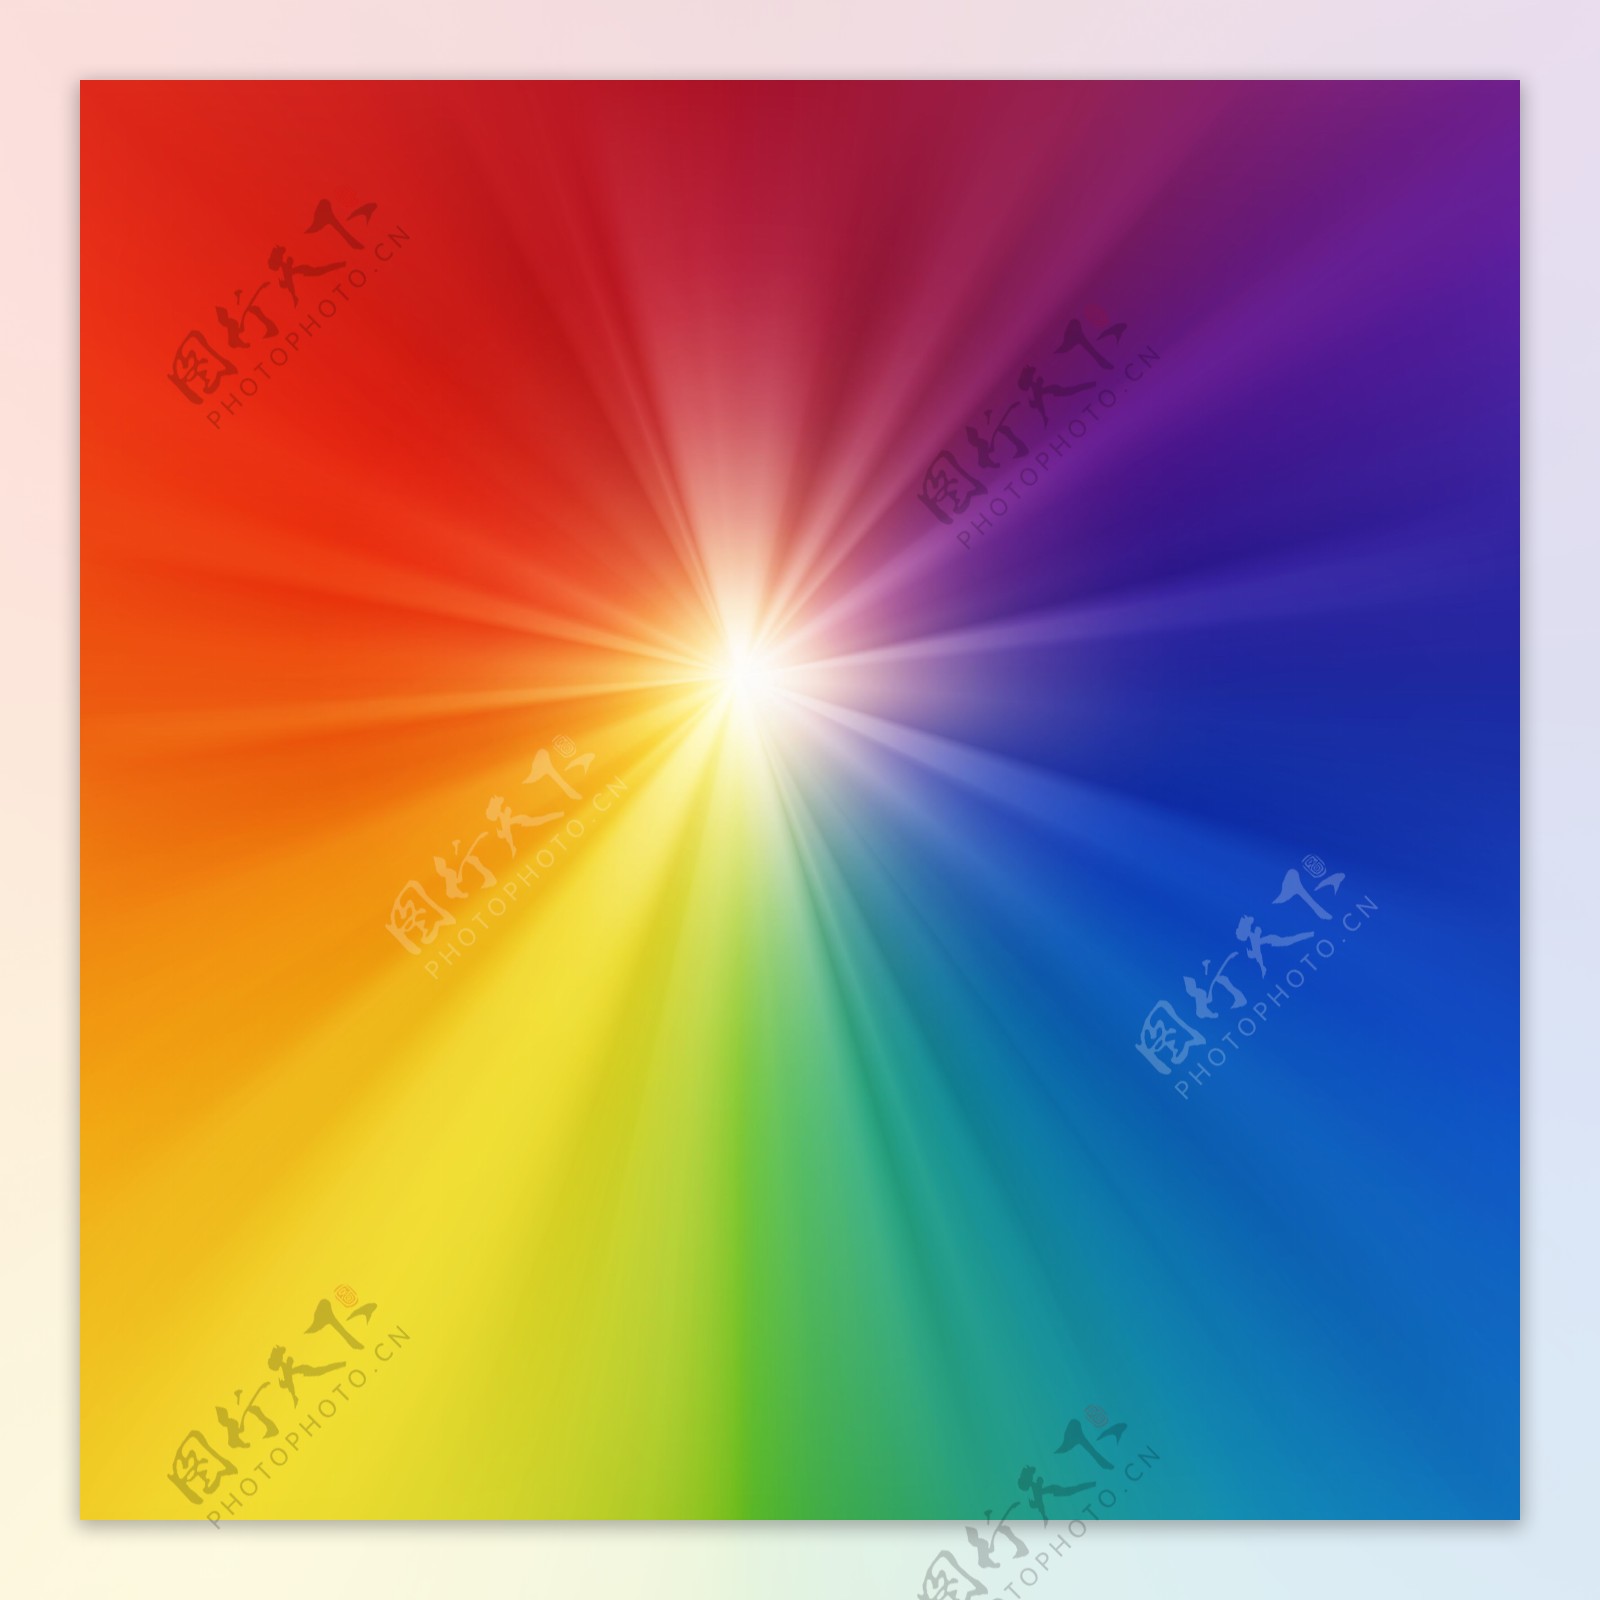 彩虹光芒抽象纹理图片图片未分层